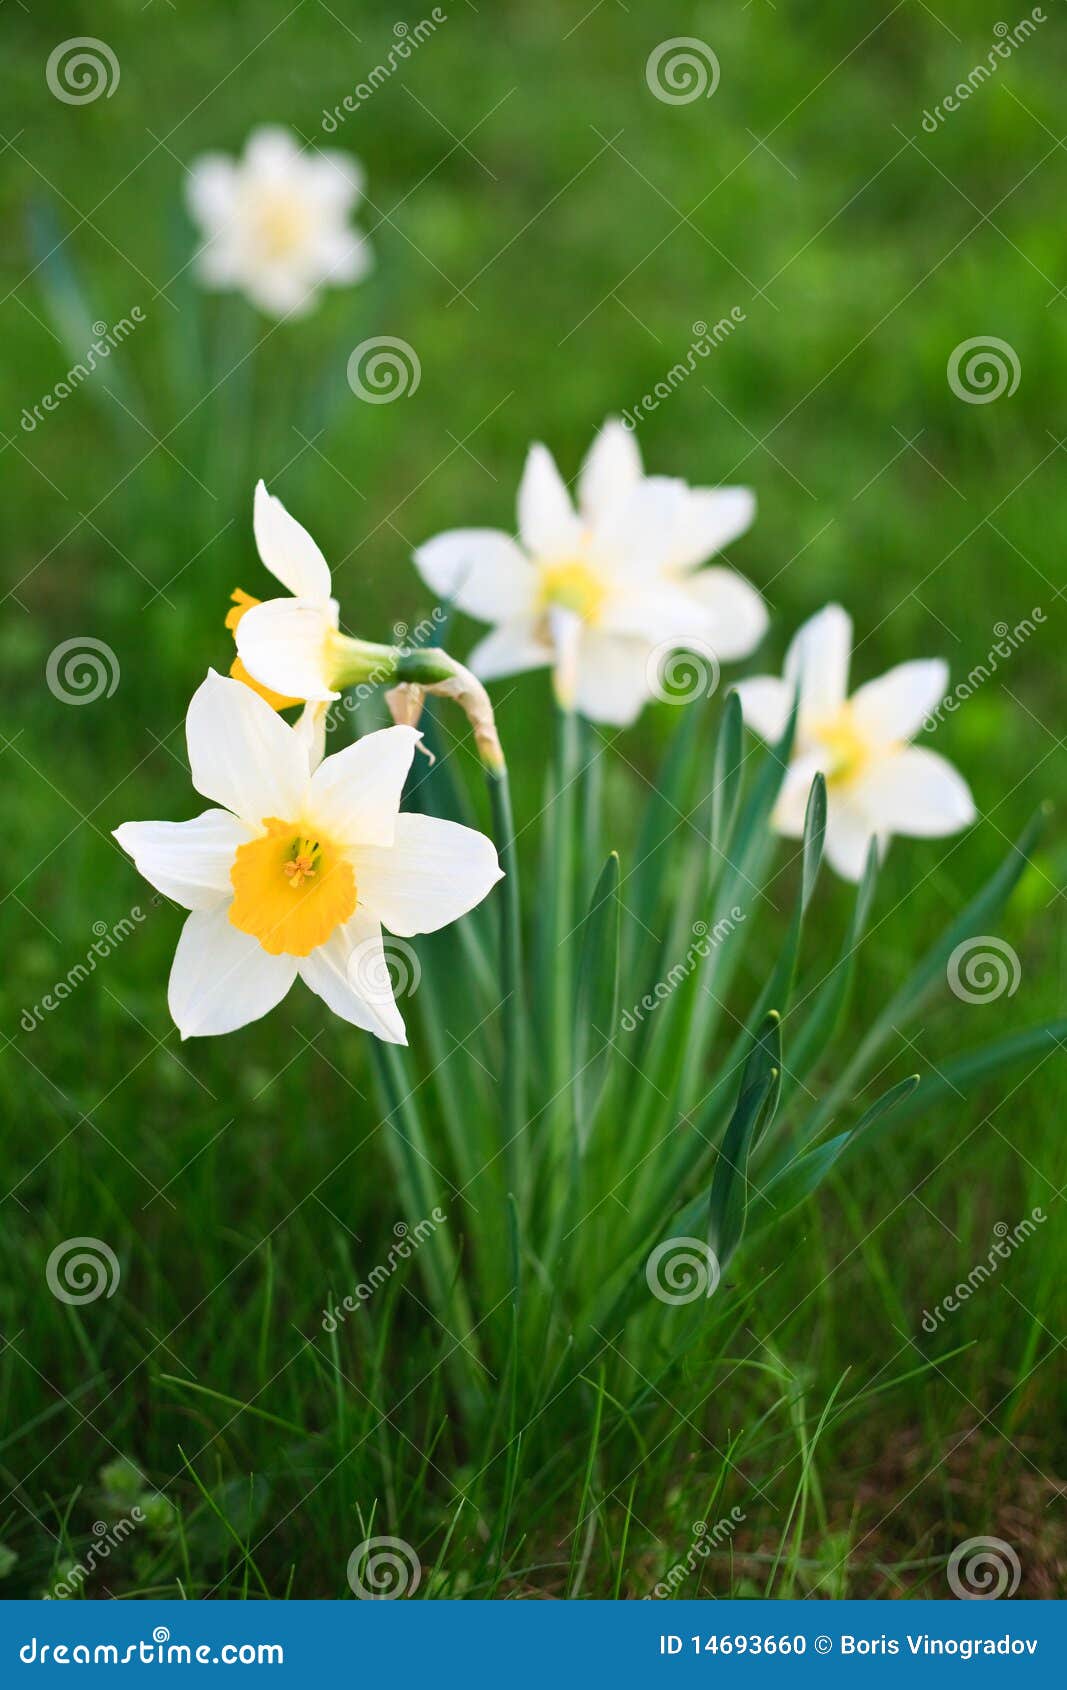 Narcisse blanc sur l'herbe dans un jardin